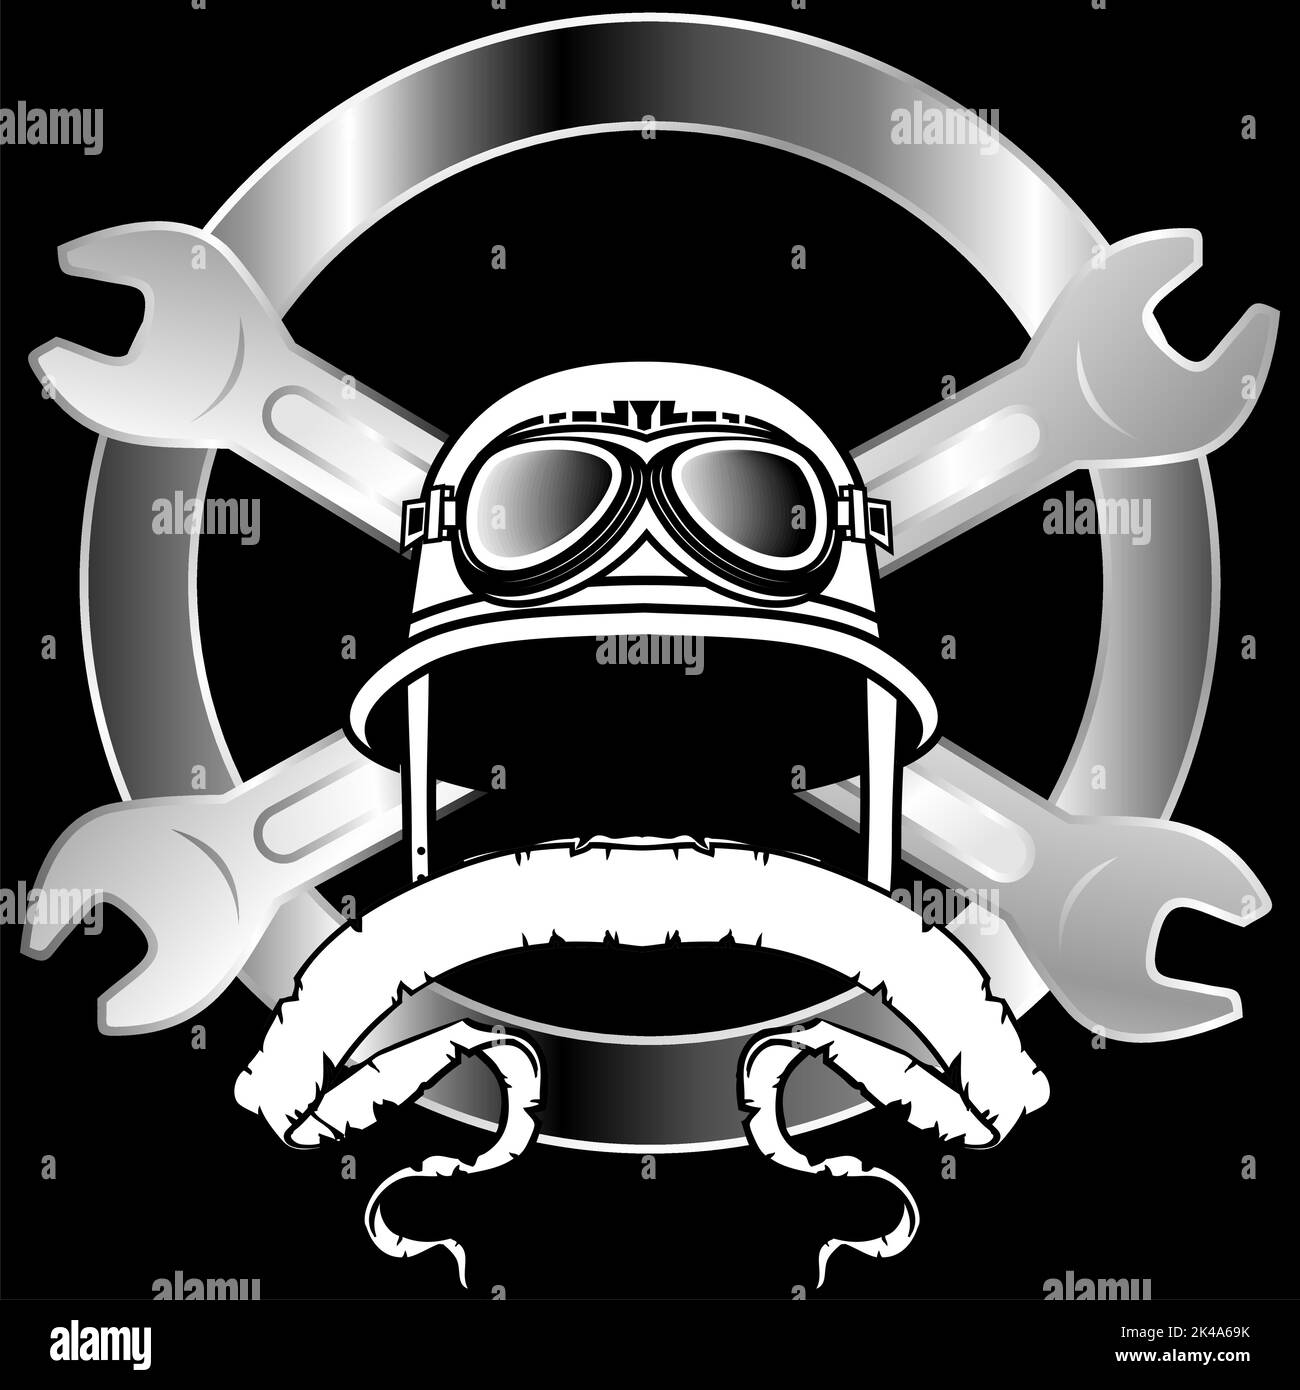 biker helmet sticker crest insignia tattoo illustration in vector format Stock Vector